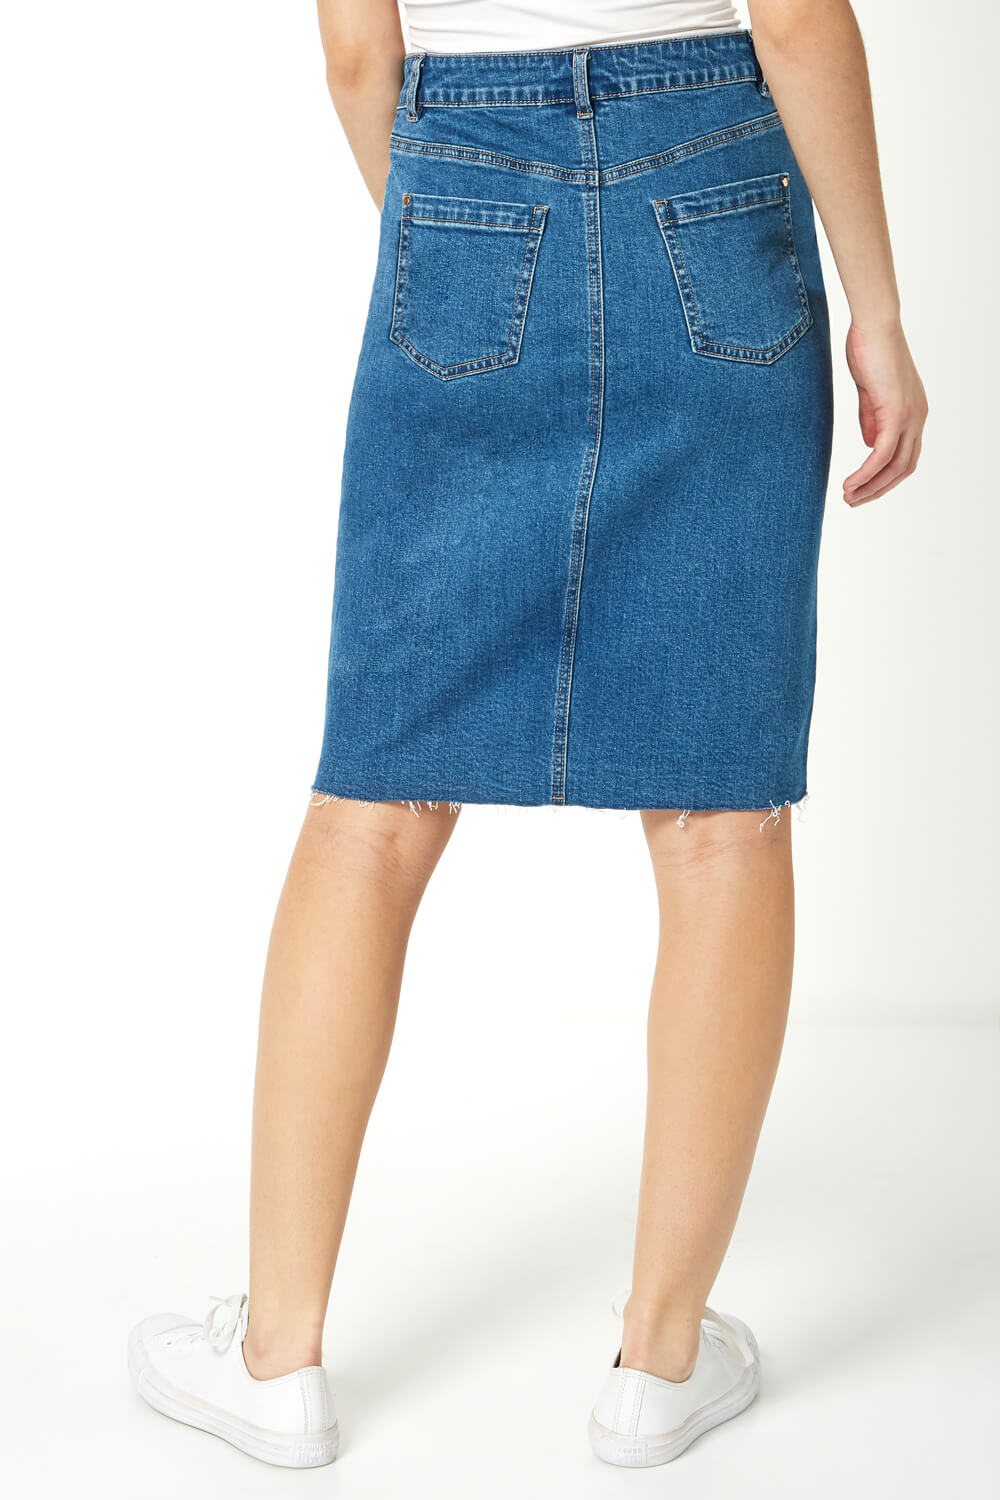 Denim Blue Split Detail Denim Skirt, Image 3 of 5